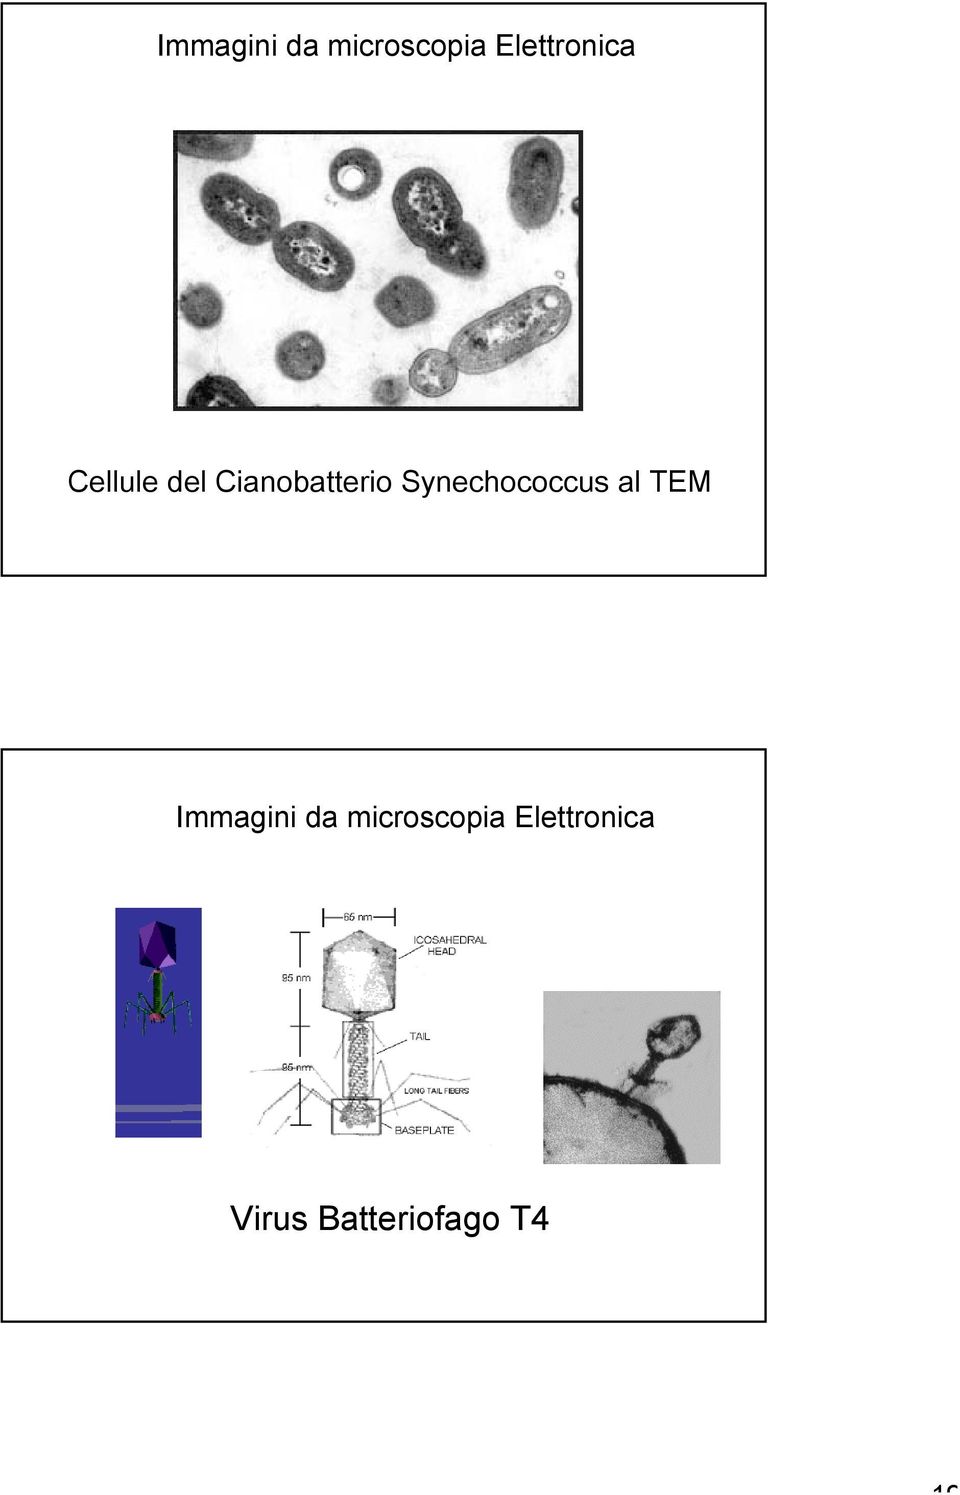 Cianobatterio Synechococcus al TEM